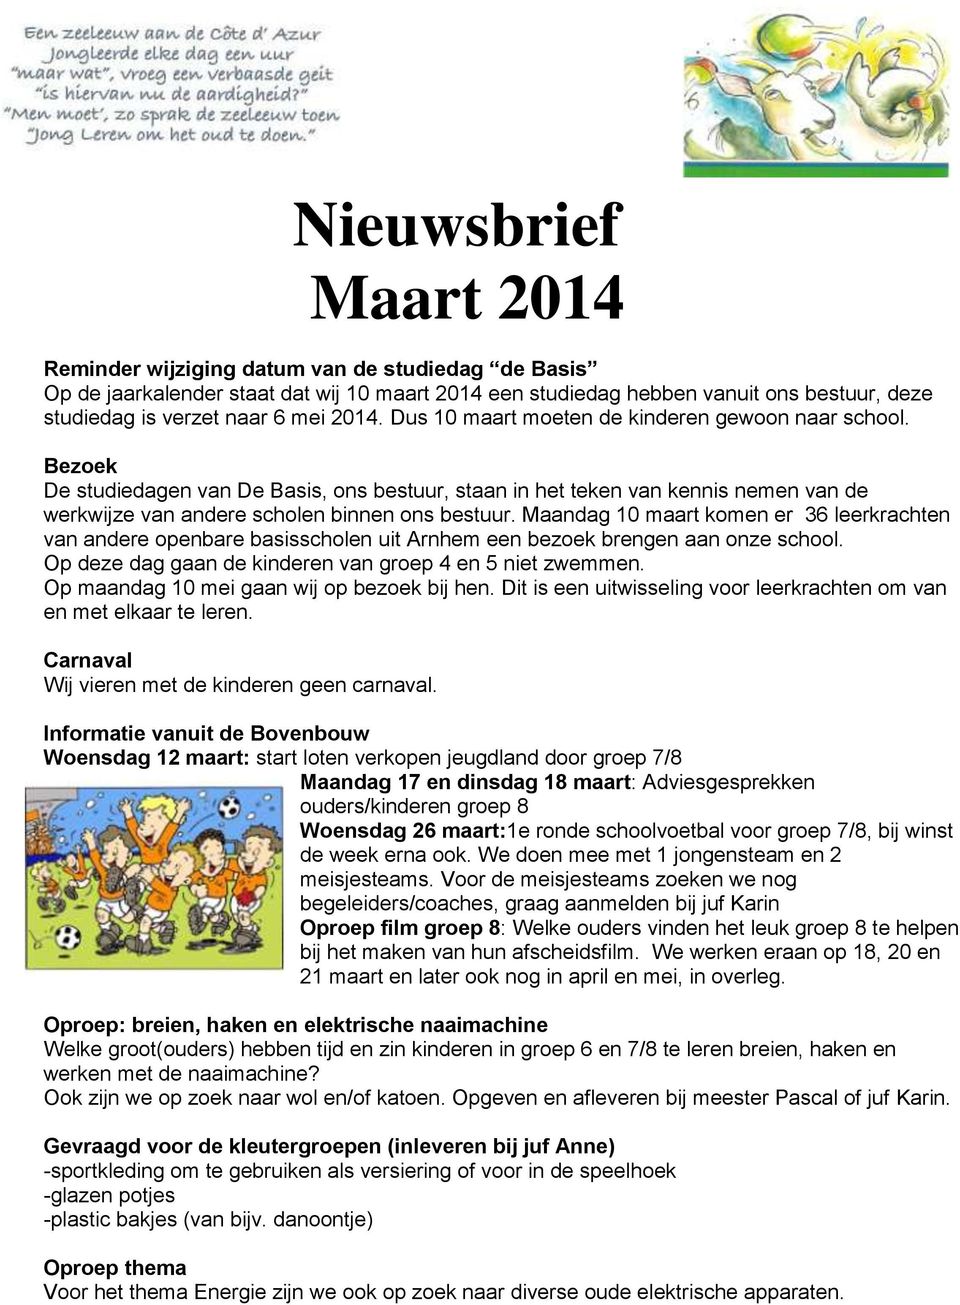 Maandag 10 maart komen er 36 leerkrachten van andere openbare basisscholen uit Arnhem een bezoek brengen aan onze school. Op deze dag gaan de kinderen van groep 4 en 5 niet zwemmen.